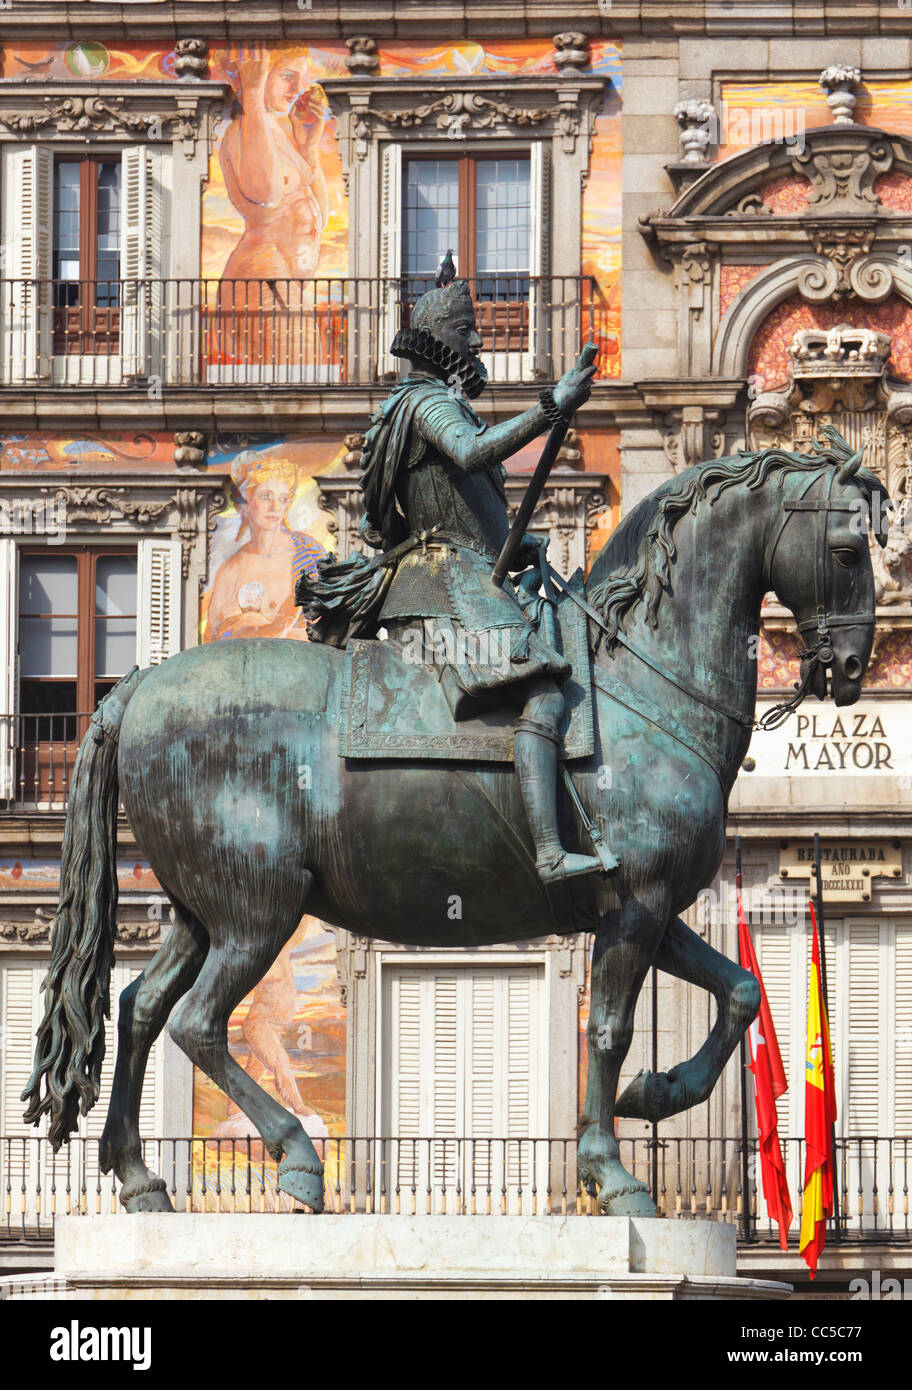 Madrid, Spagna. Plaza Mayor. Statua equestre di re Filippo III Foto Stock